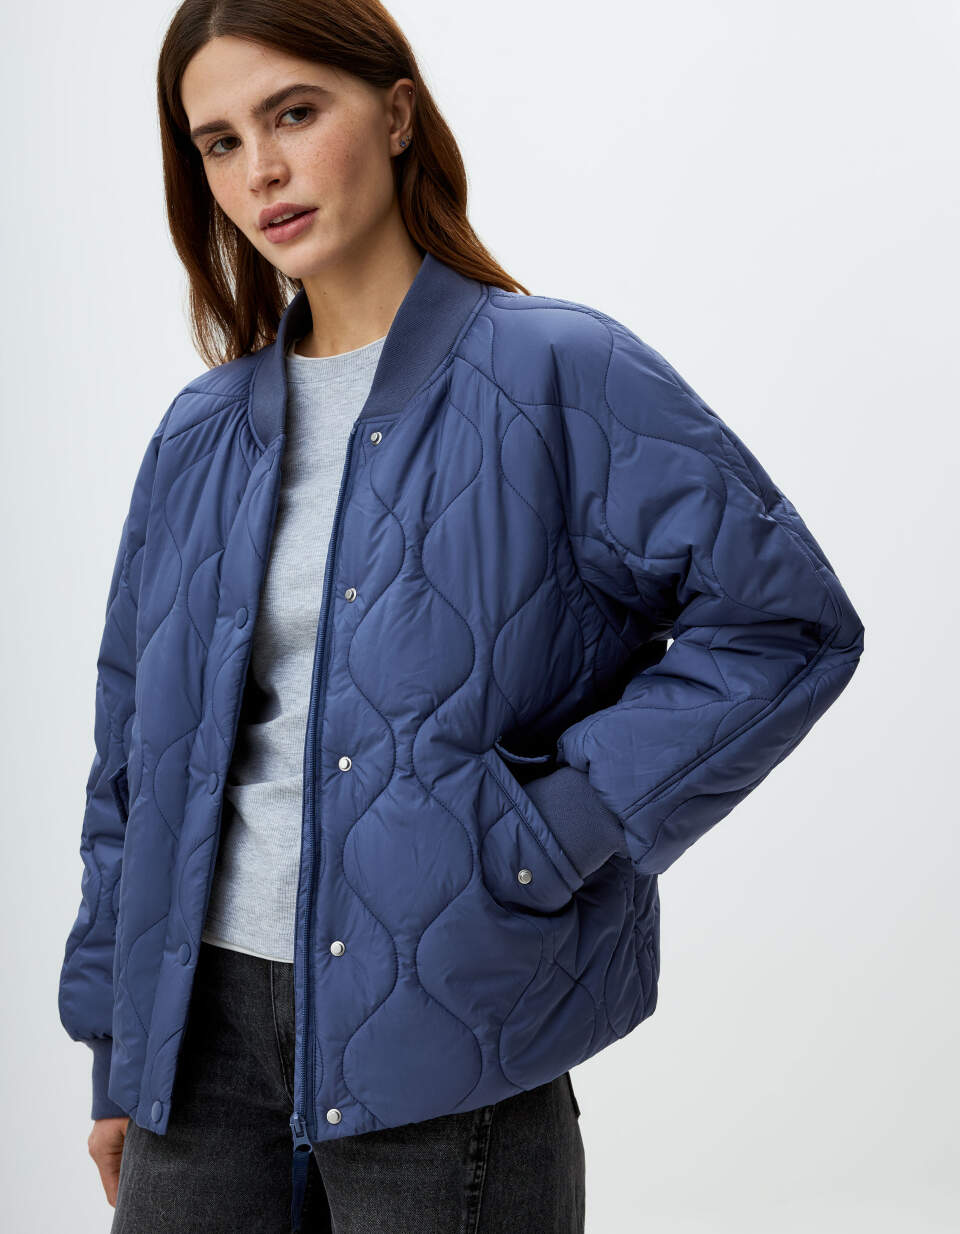 Короткая стеганая куртка куртка стеганая короткая на молнии s синий